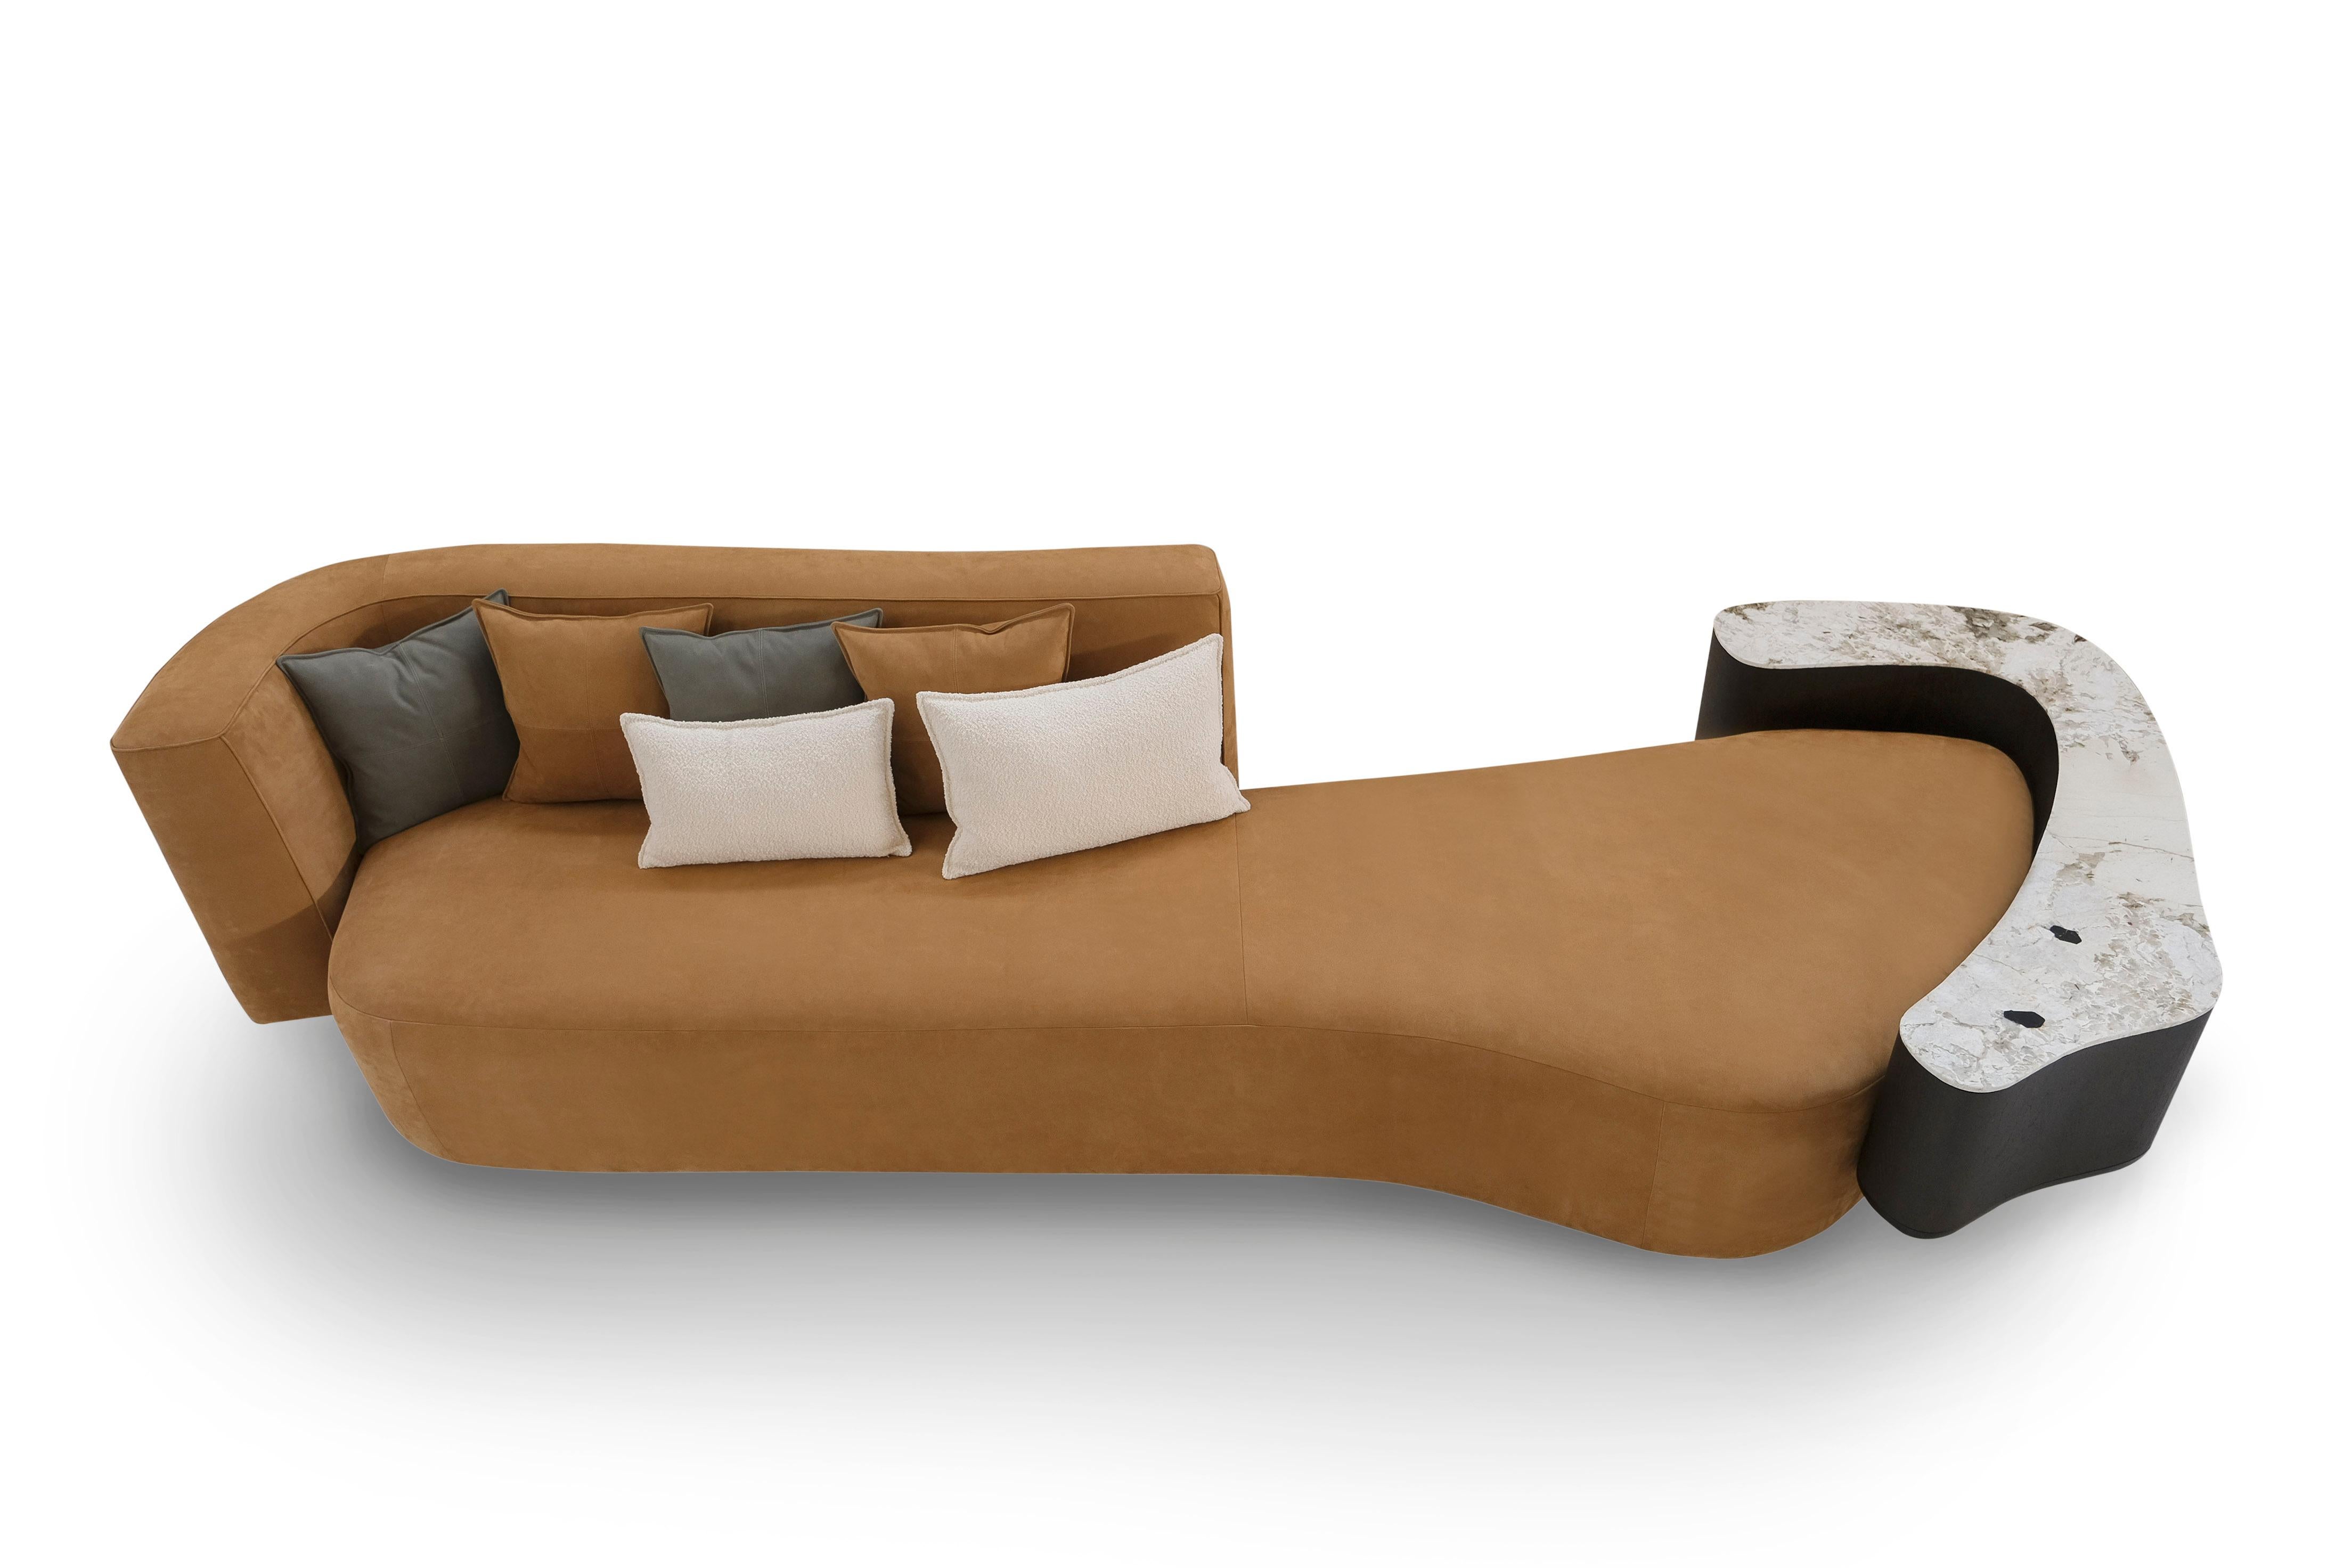 Galapinhos Lounge Sofa, Contemporary Collection, Handcrafted in Portugal - Europe by Greenapple.

Le canapé en cuir Galapinhos a été conçu pour ajouter l'essence de la nature dans l'espace intérieur, en s'inspirant du paysage naturel captivant de la